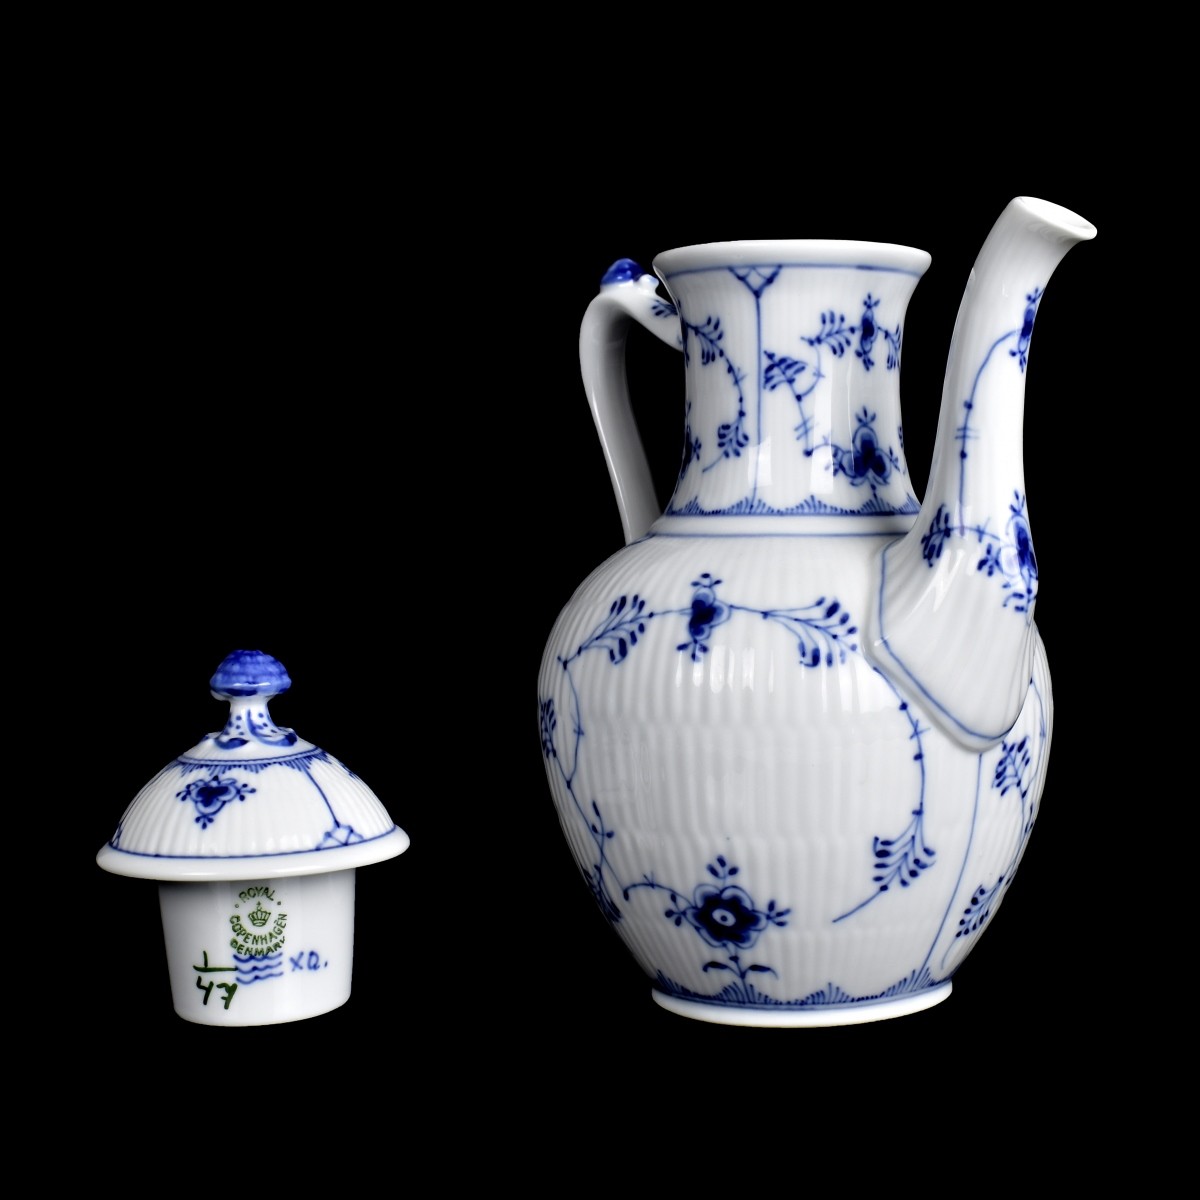 Royal Copenhagen Porcelain Teapot